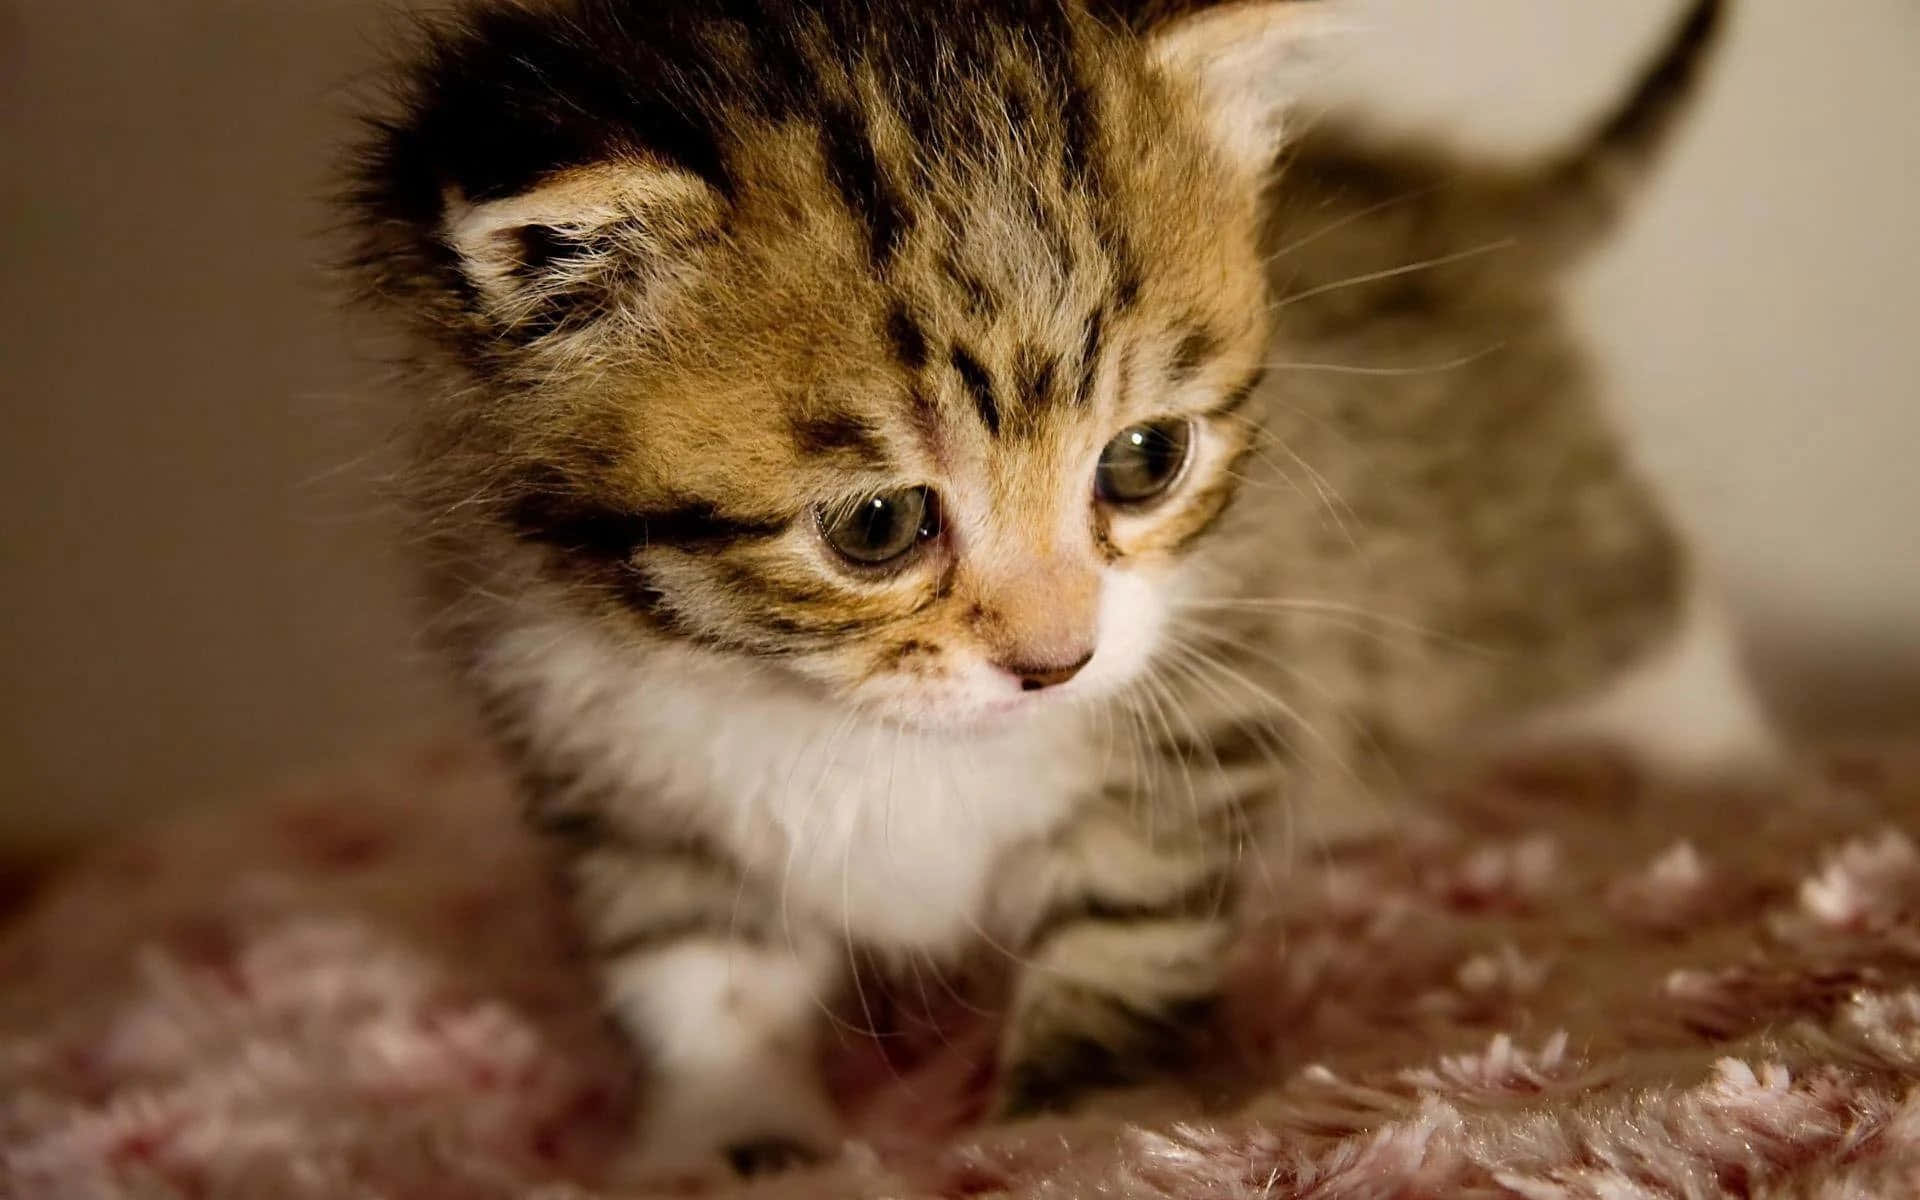 Awwww, such a cute little baby cat!